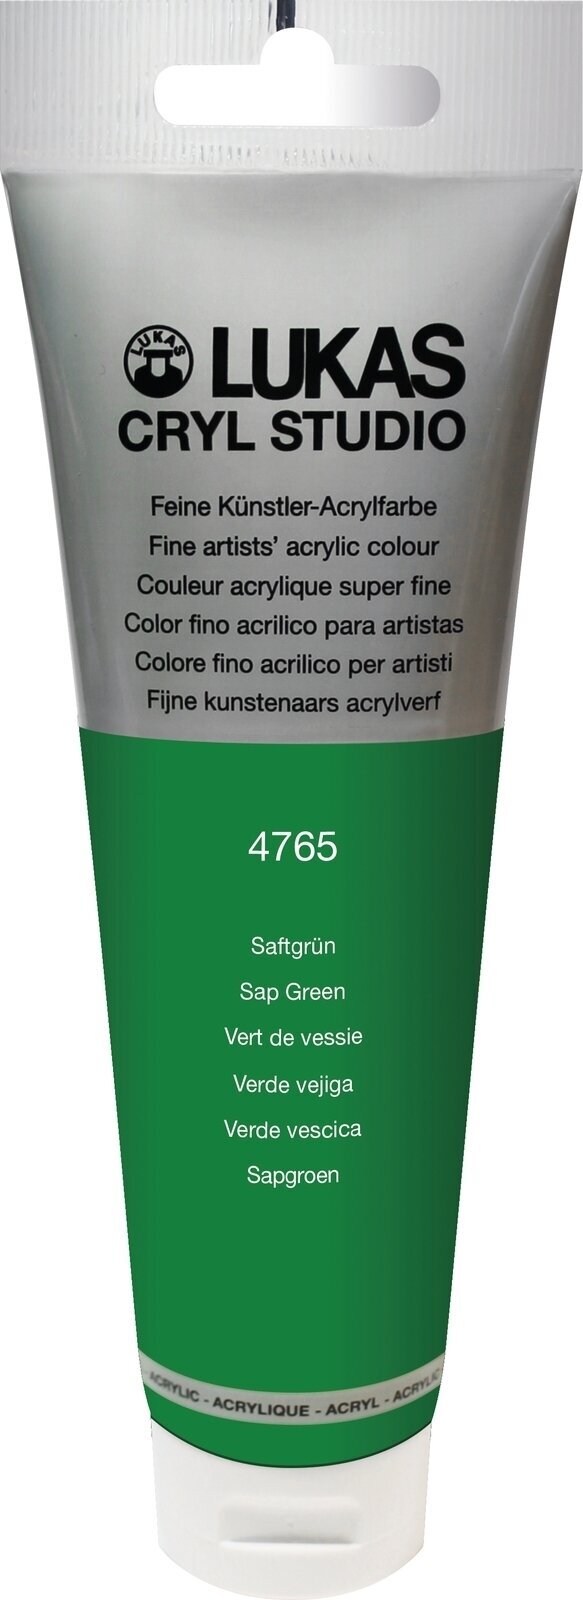 Tinta acrílica Lukas Cryl Studio Acrylic Paint Plastic Tube Tinta acrílica Sap Green 125 ml 1 un.